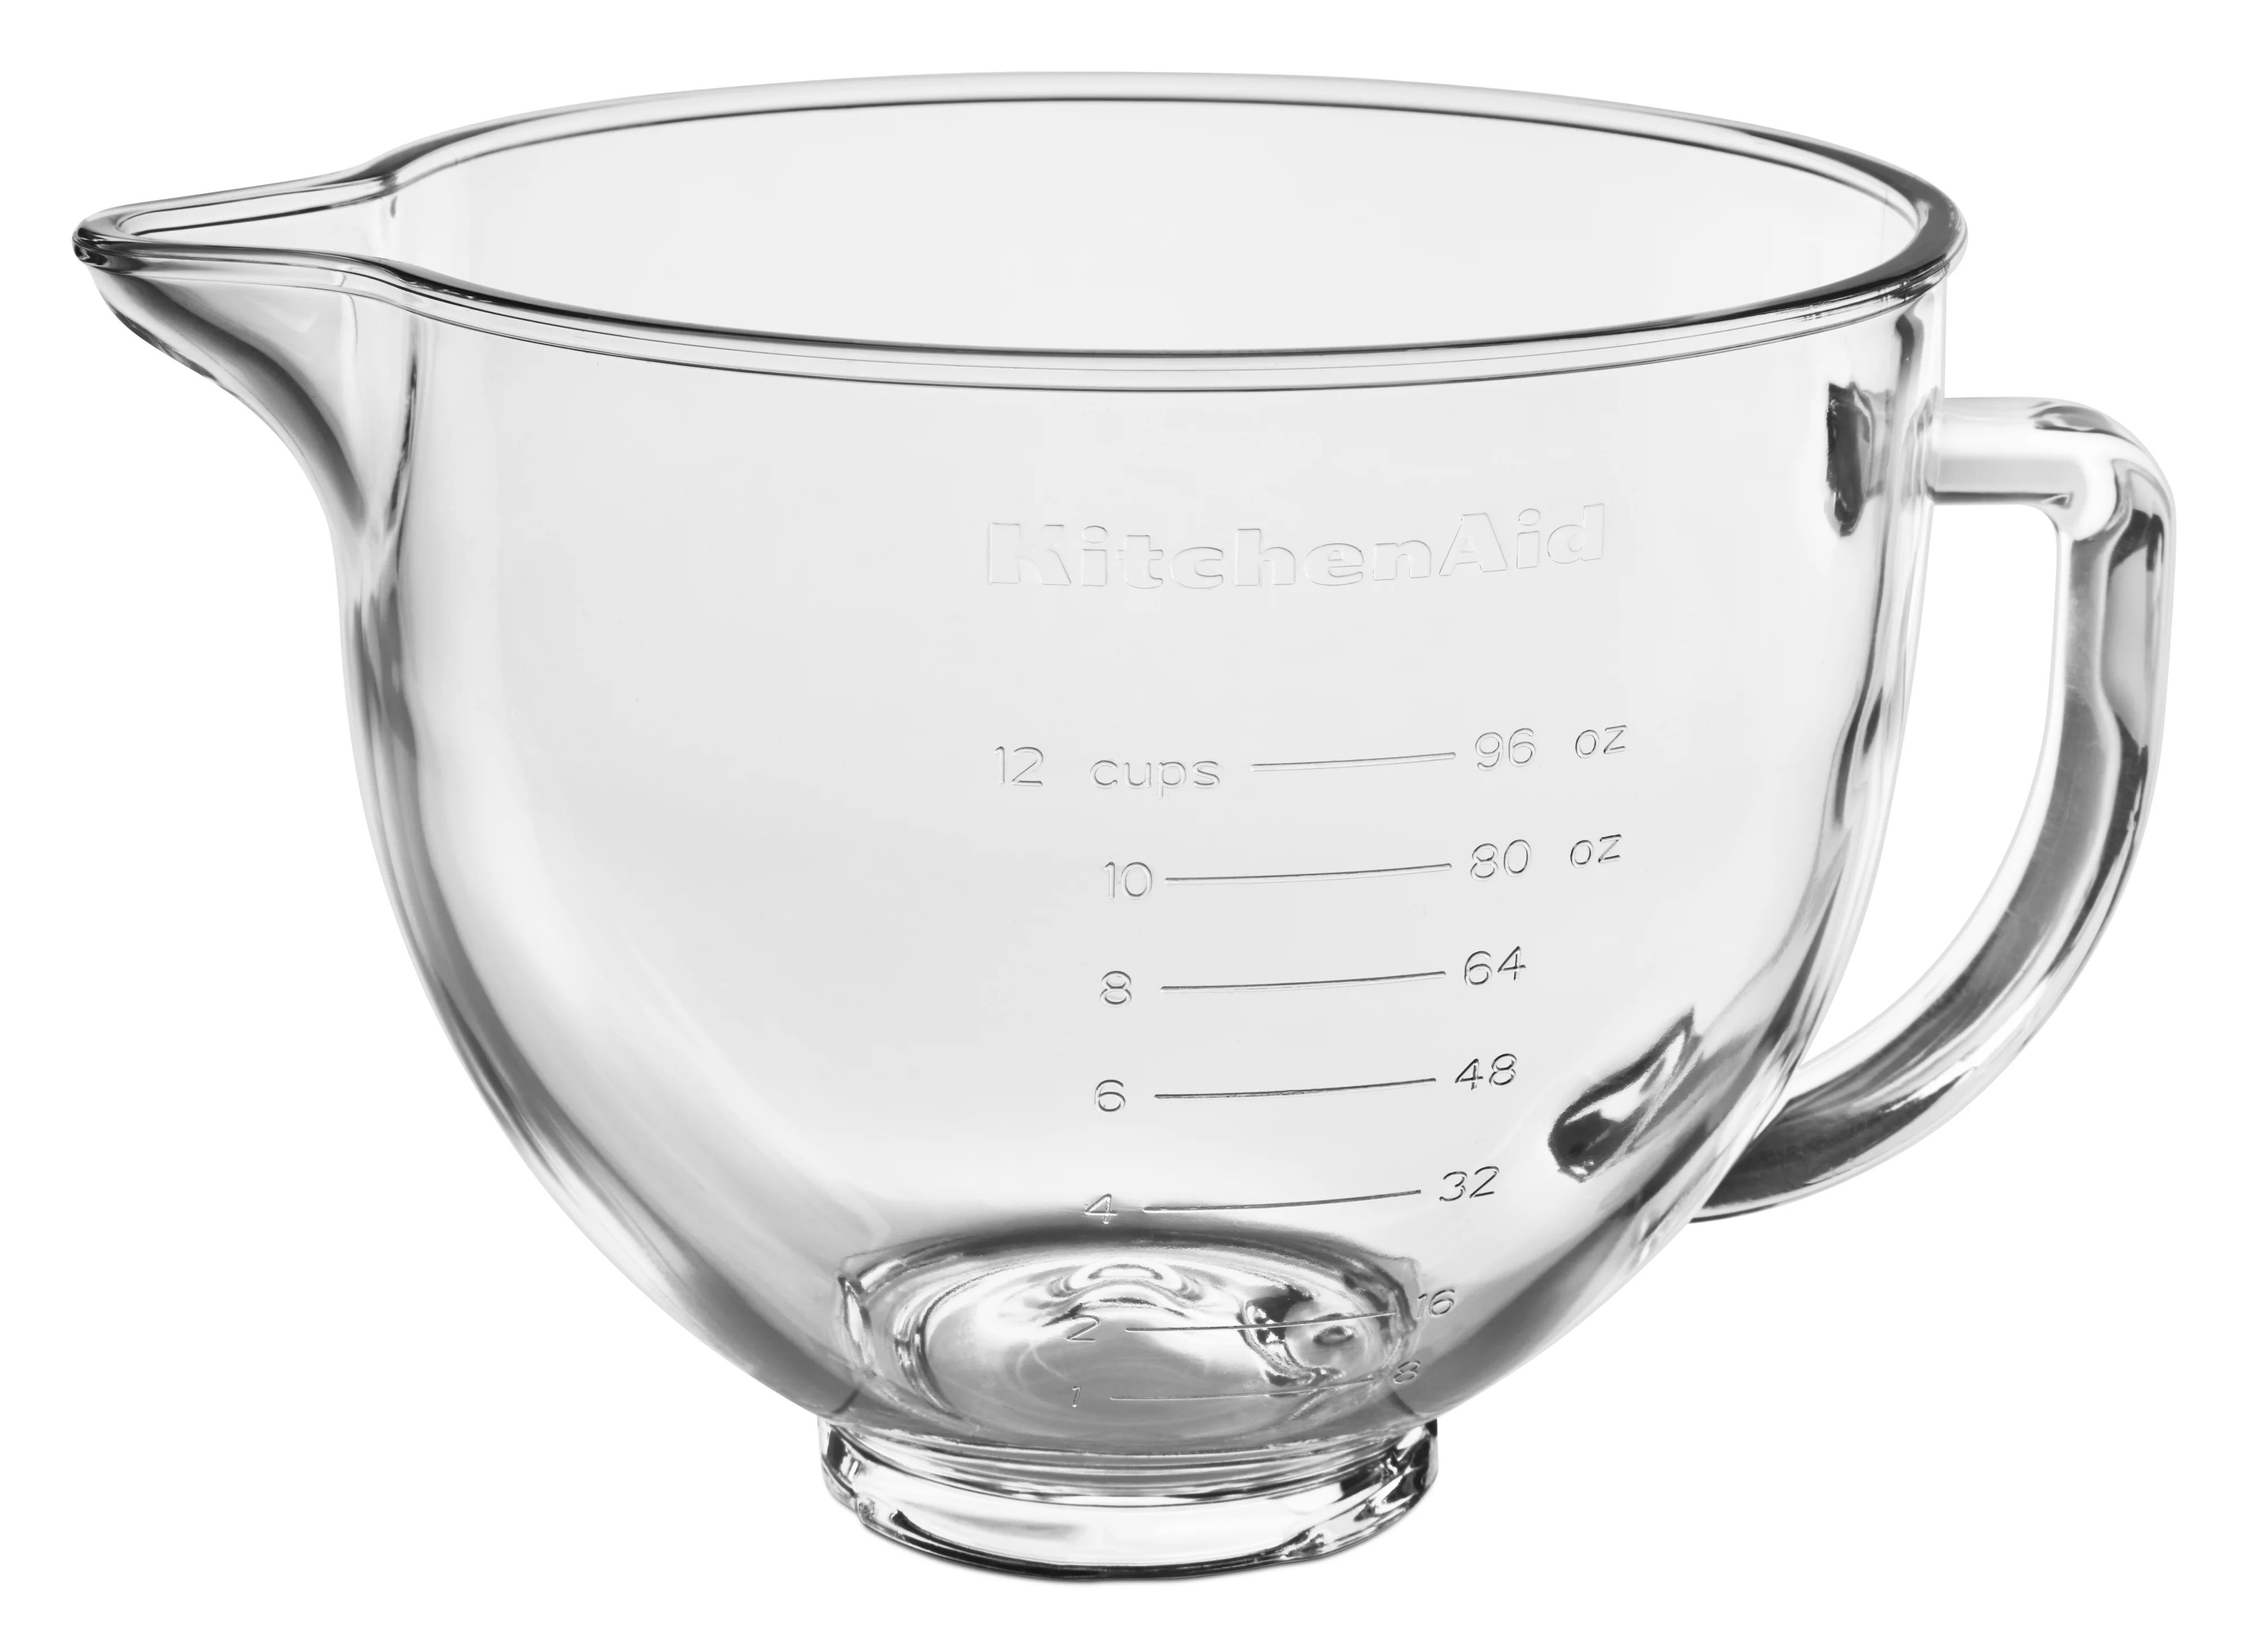 KitchenAid 5 Quart Tilt-Head Glass Bowl with Measurement Markings - KSM5NLGB - Walmart.com | Walmart (US)